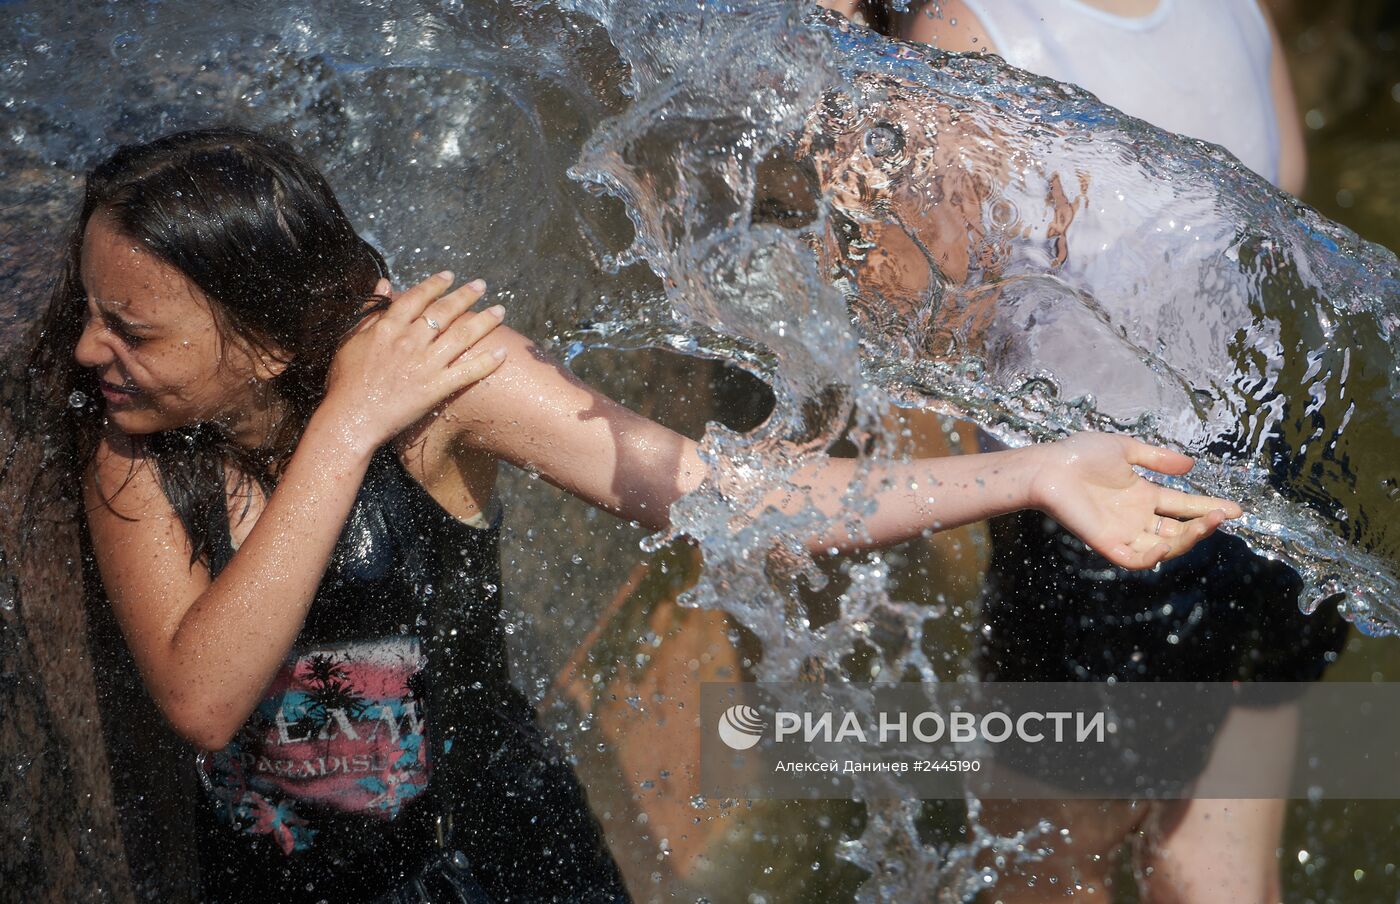 Флешмоб "Водяная битва" в Санкт-Петербурге